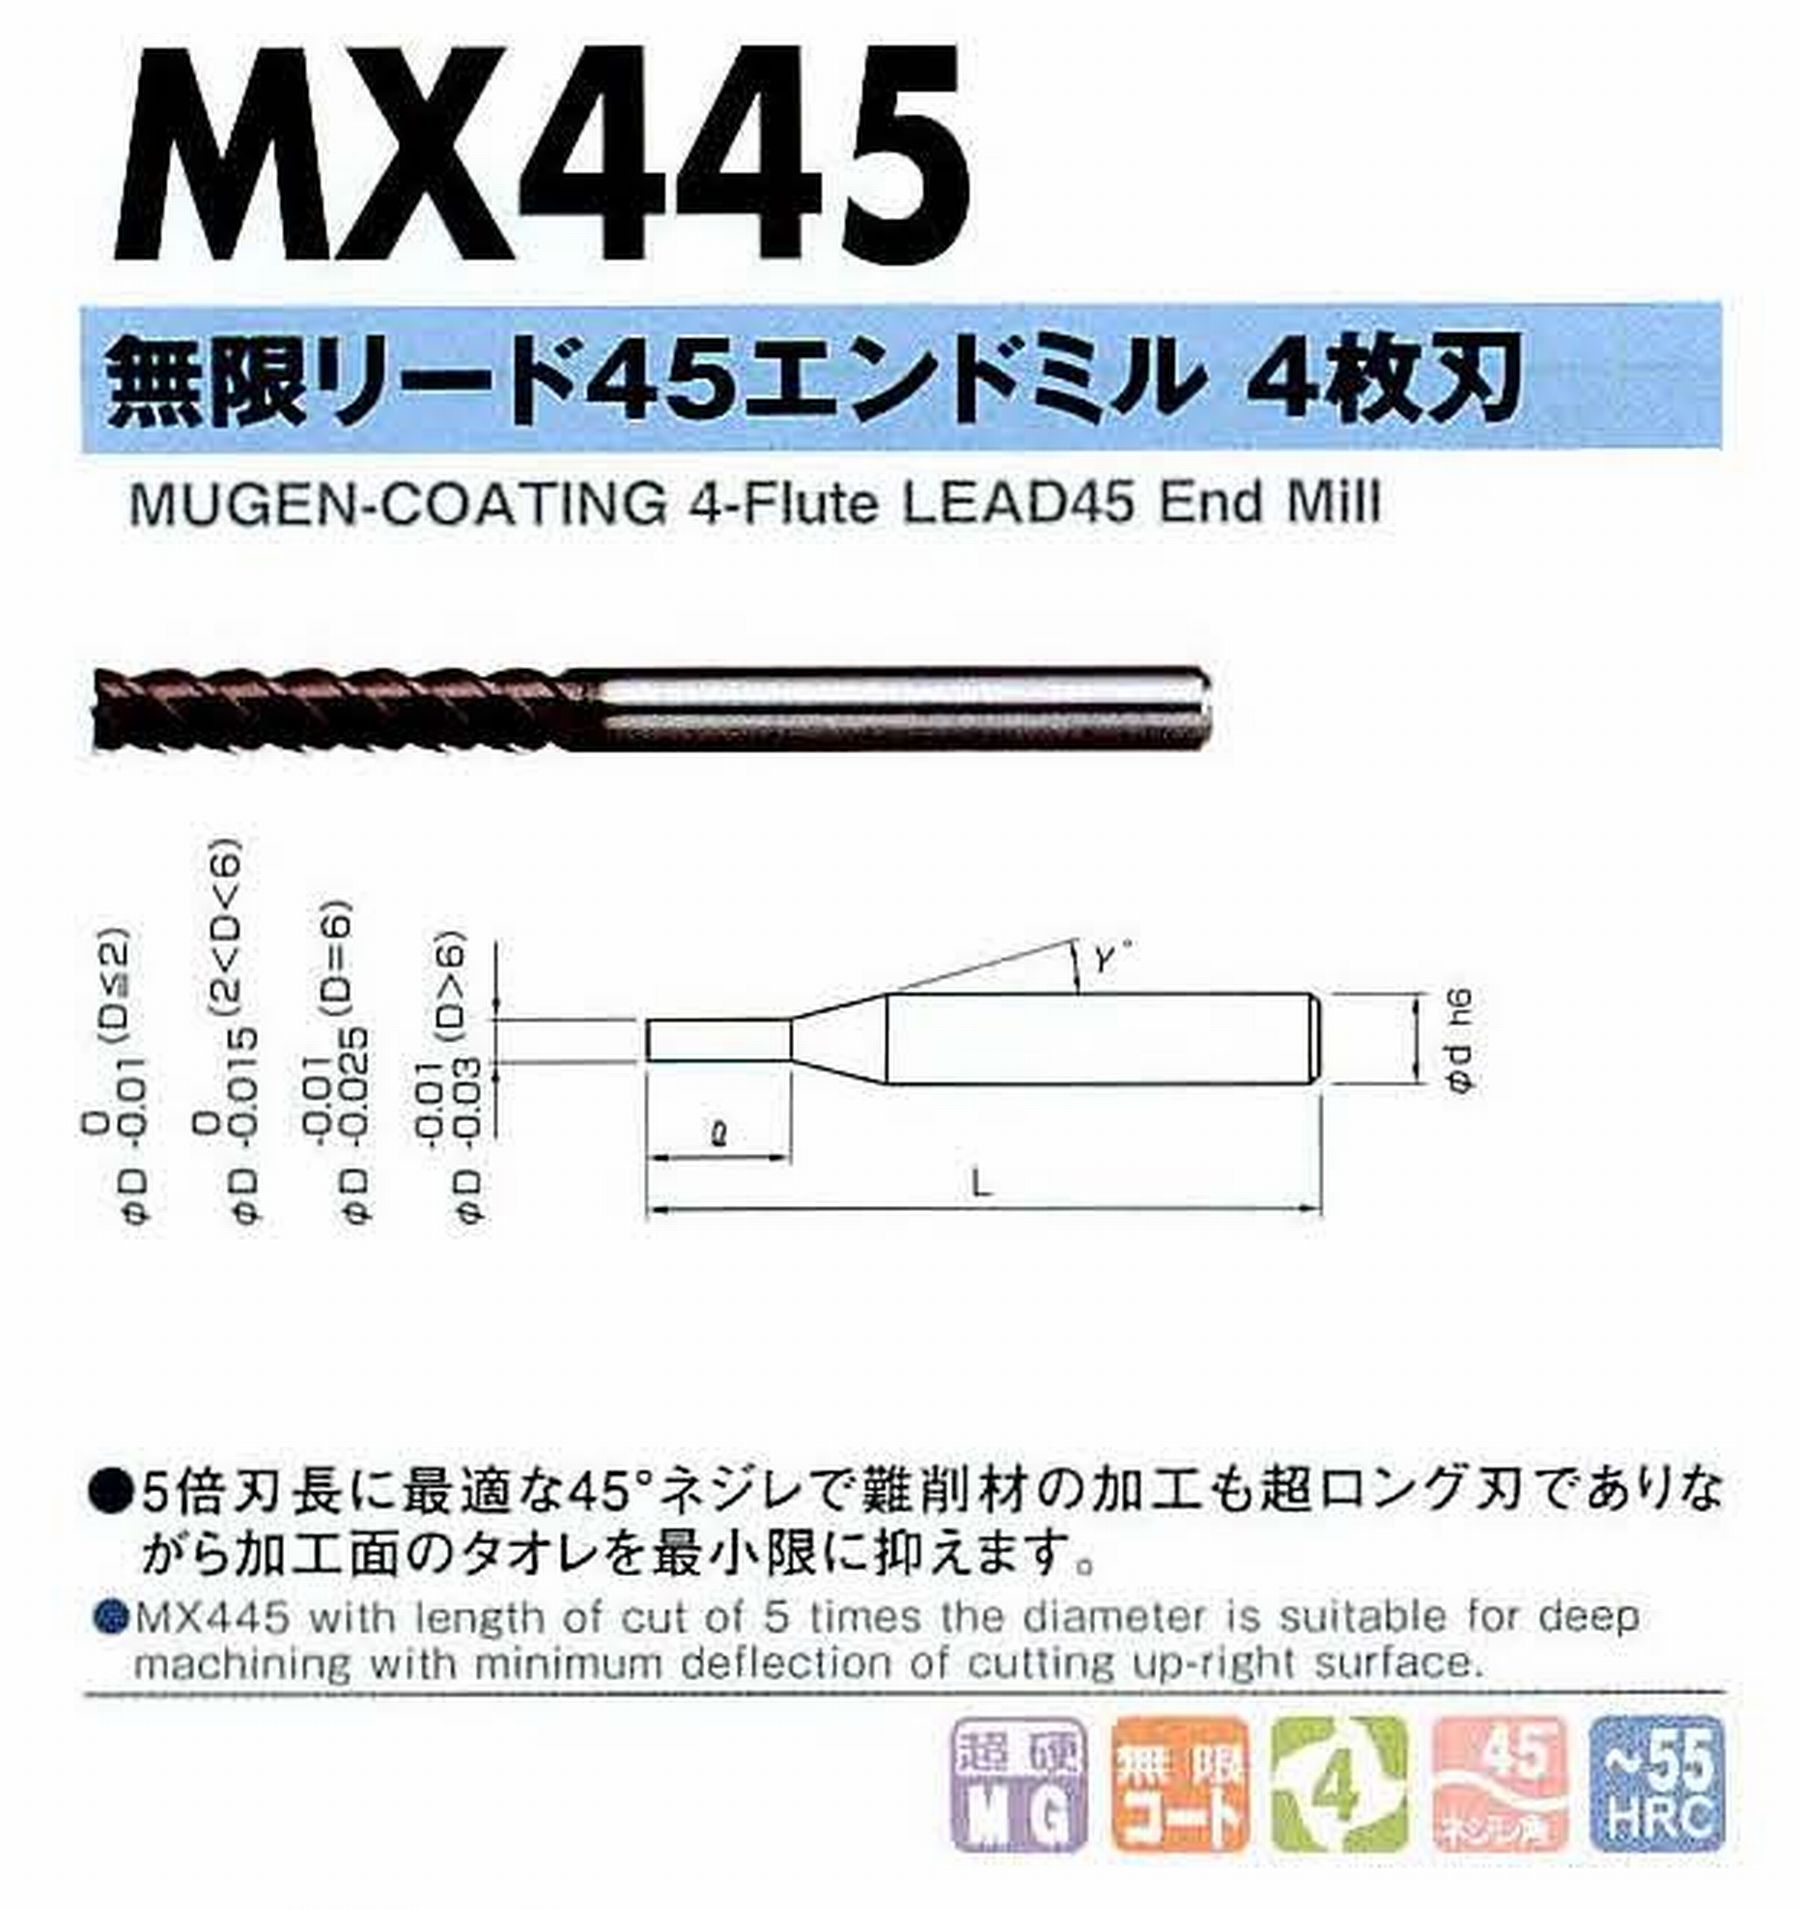 NS 日進工具 MX445 無限リード45エンドミル4枚刃 コードNO．08-00095-00250 刃径2.5 刃長12.5 首角12° シャンク径4mm 全長50